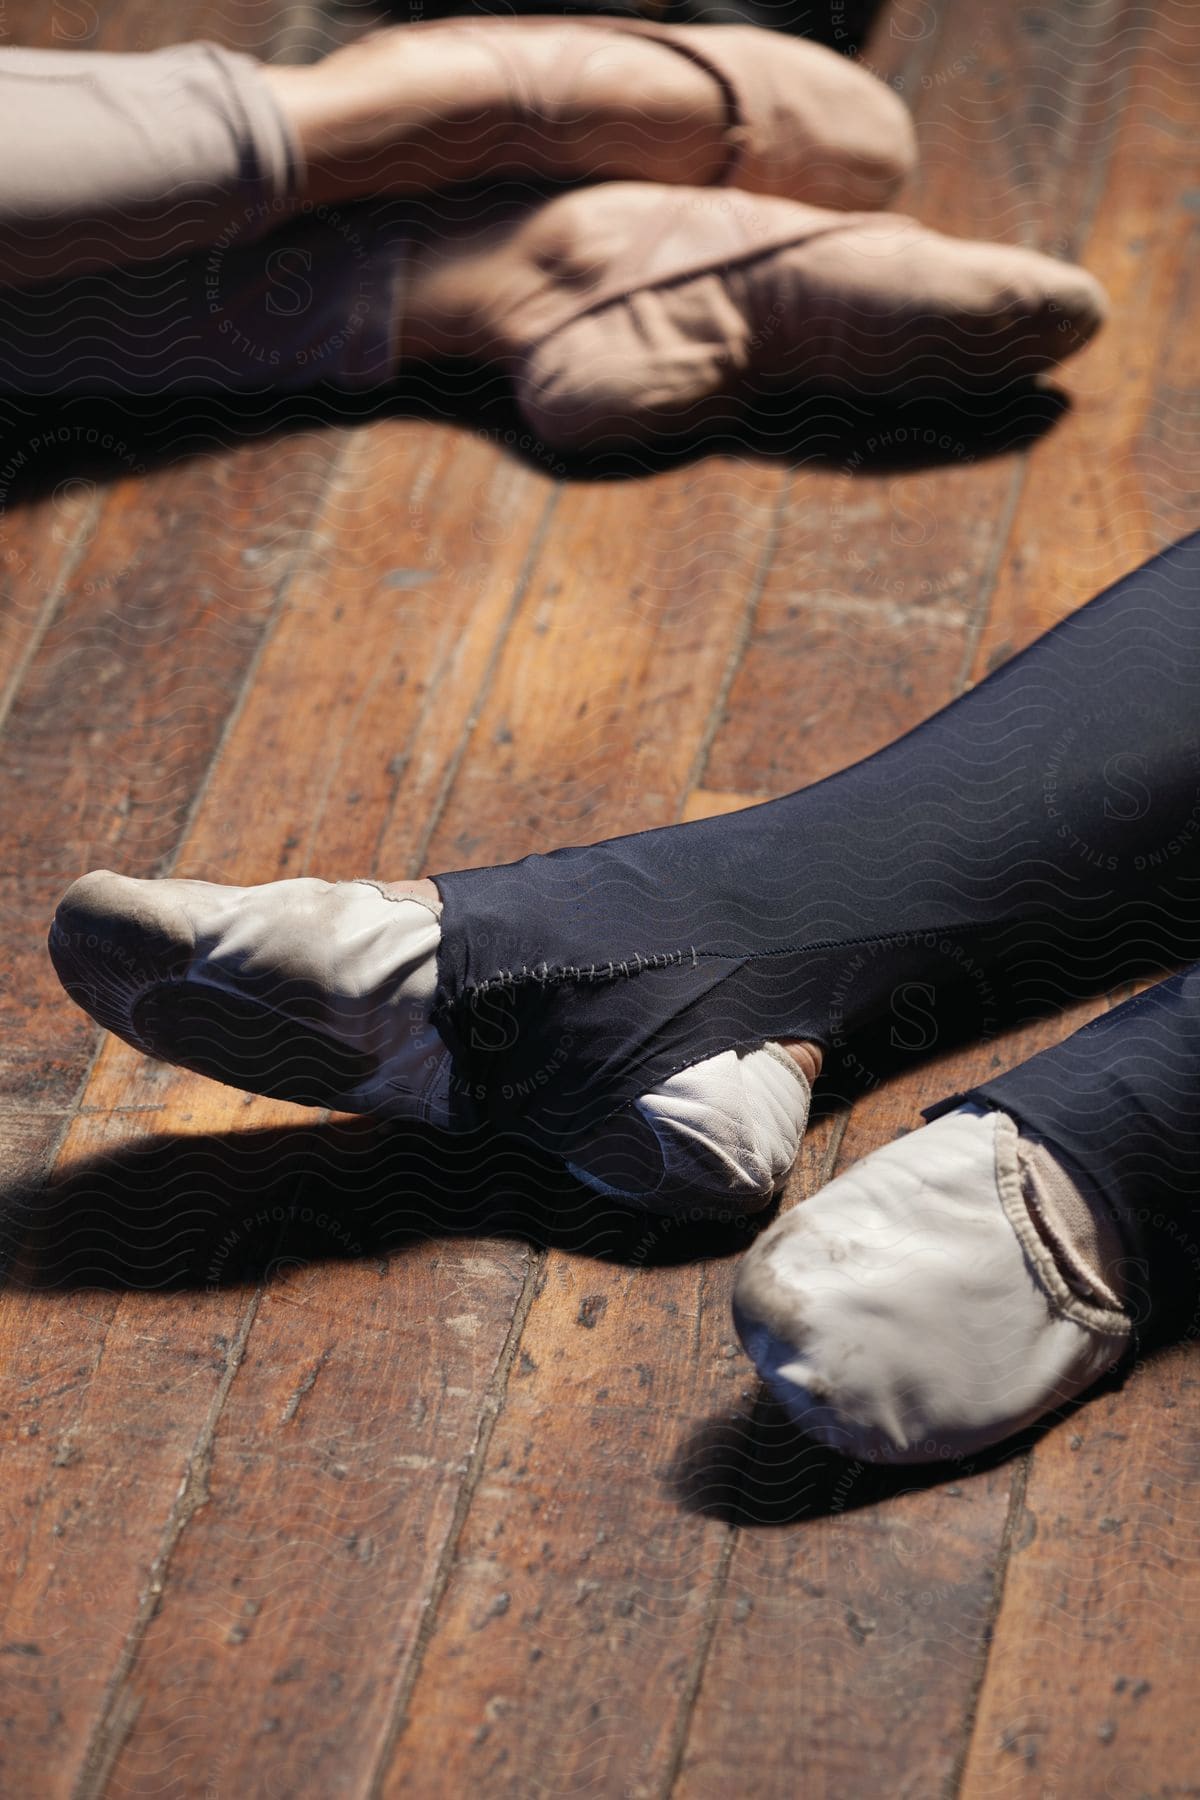 Two ballet dancers feet on a wooden floor indoors